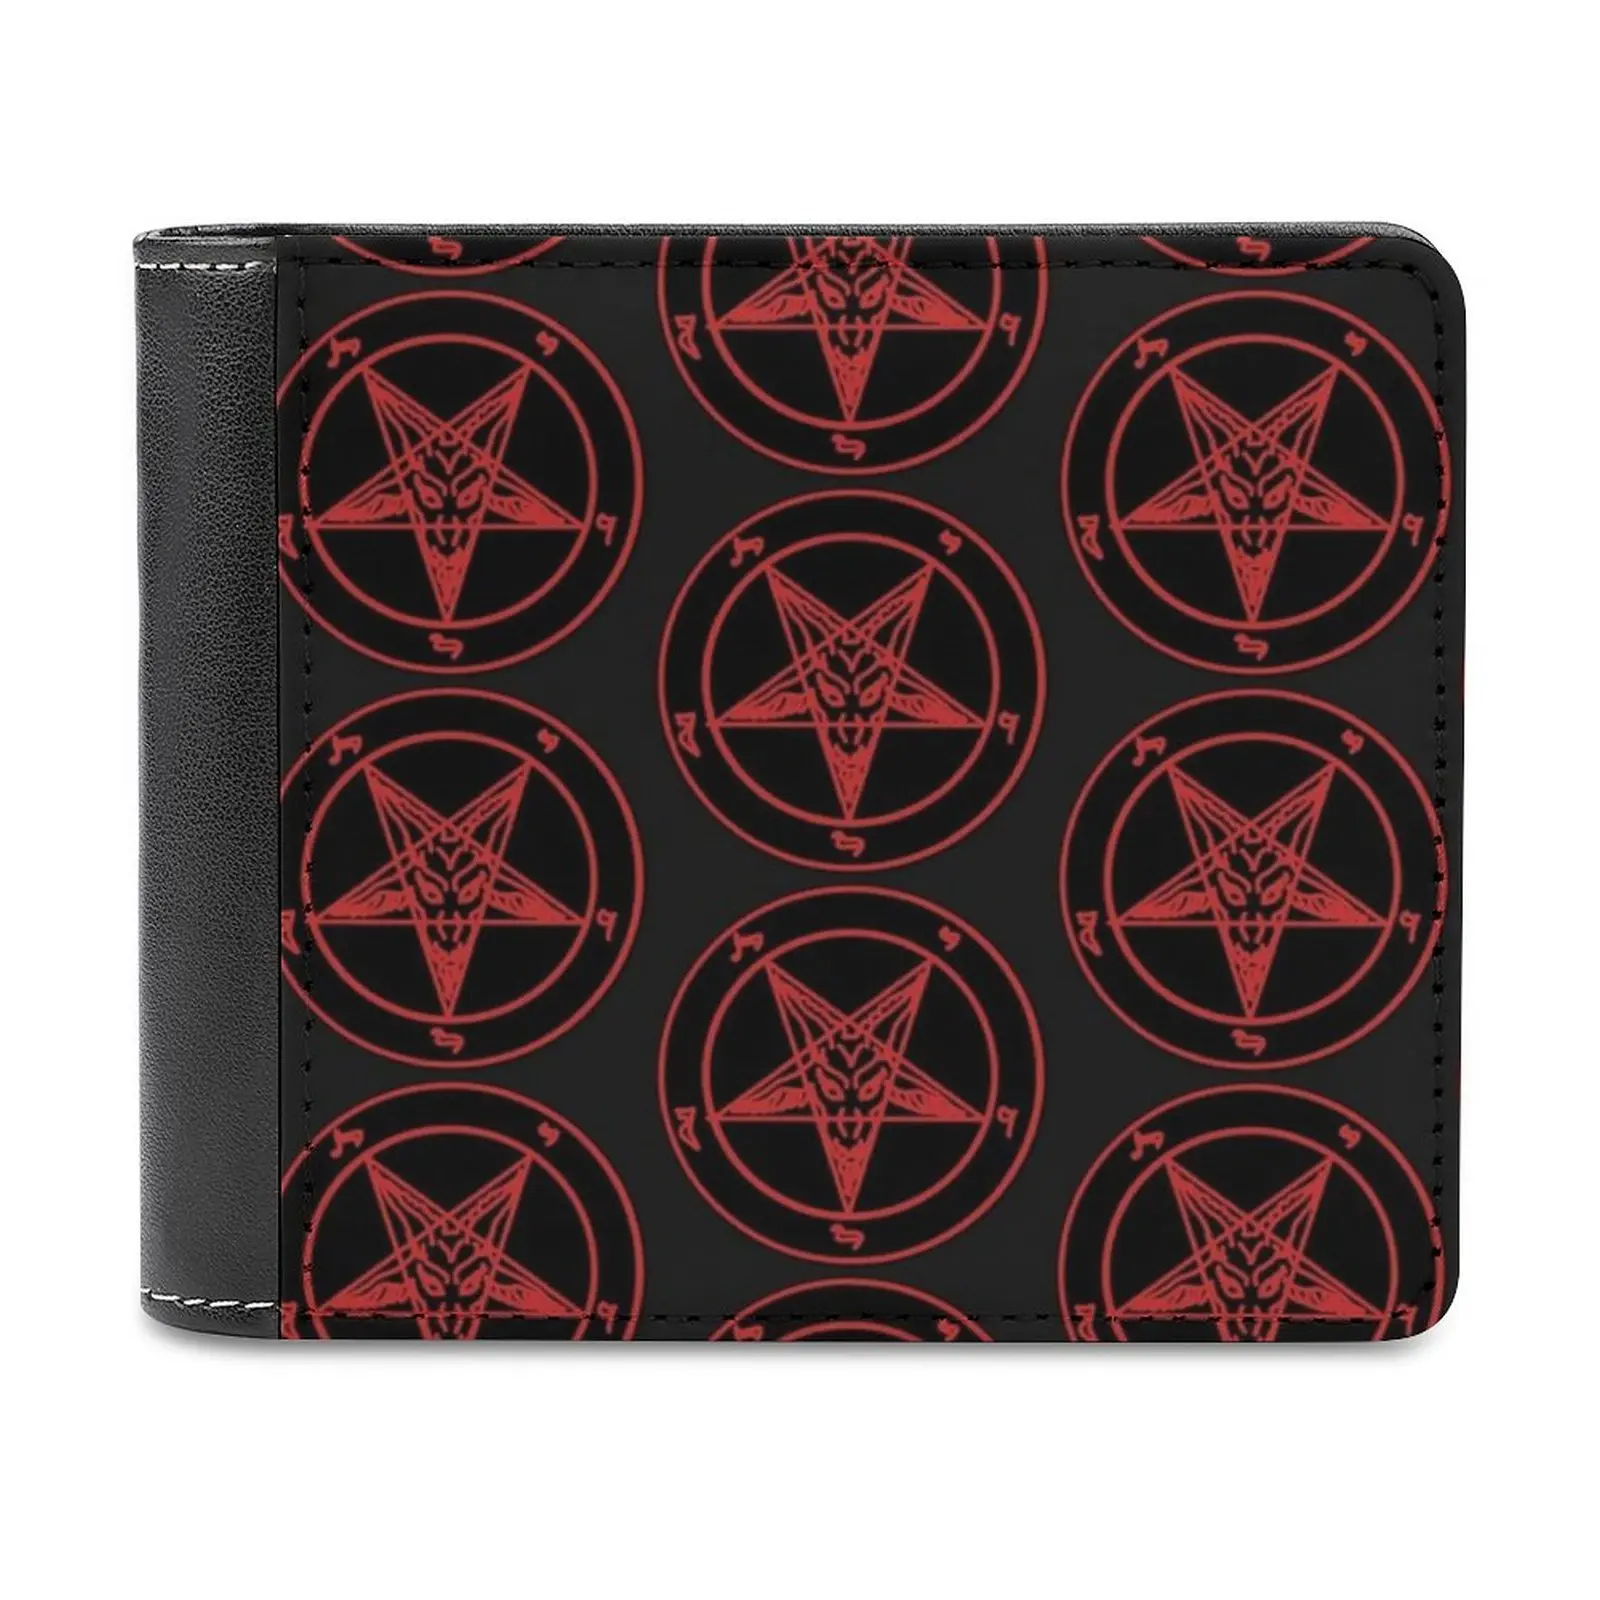 

Red Baphomet Men's Wallet Purses Wallets New Design Dollar Price Top Men Leather Wallet Baphomet Hellfire Club 666 Pentagram